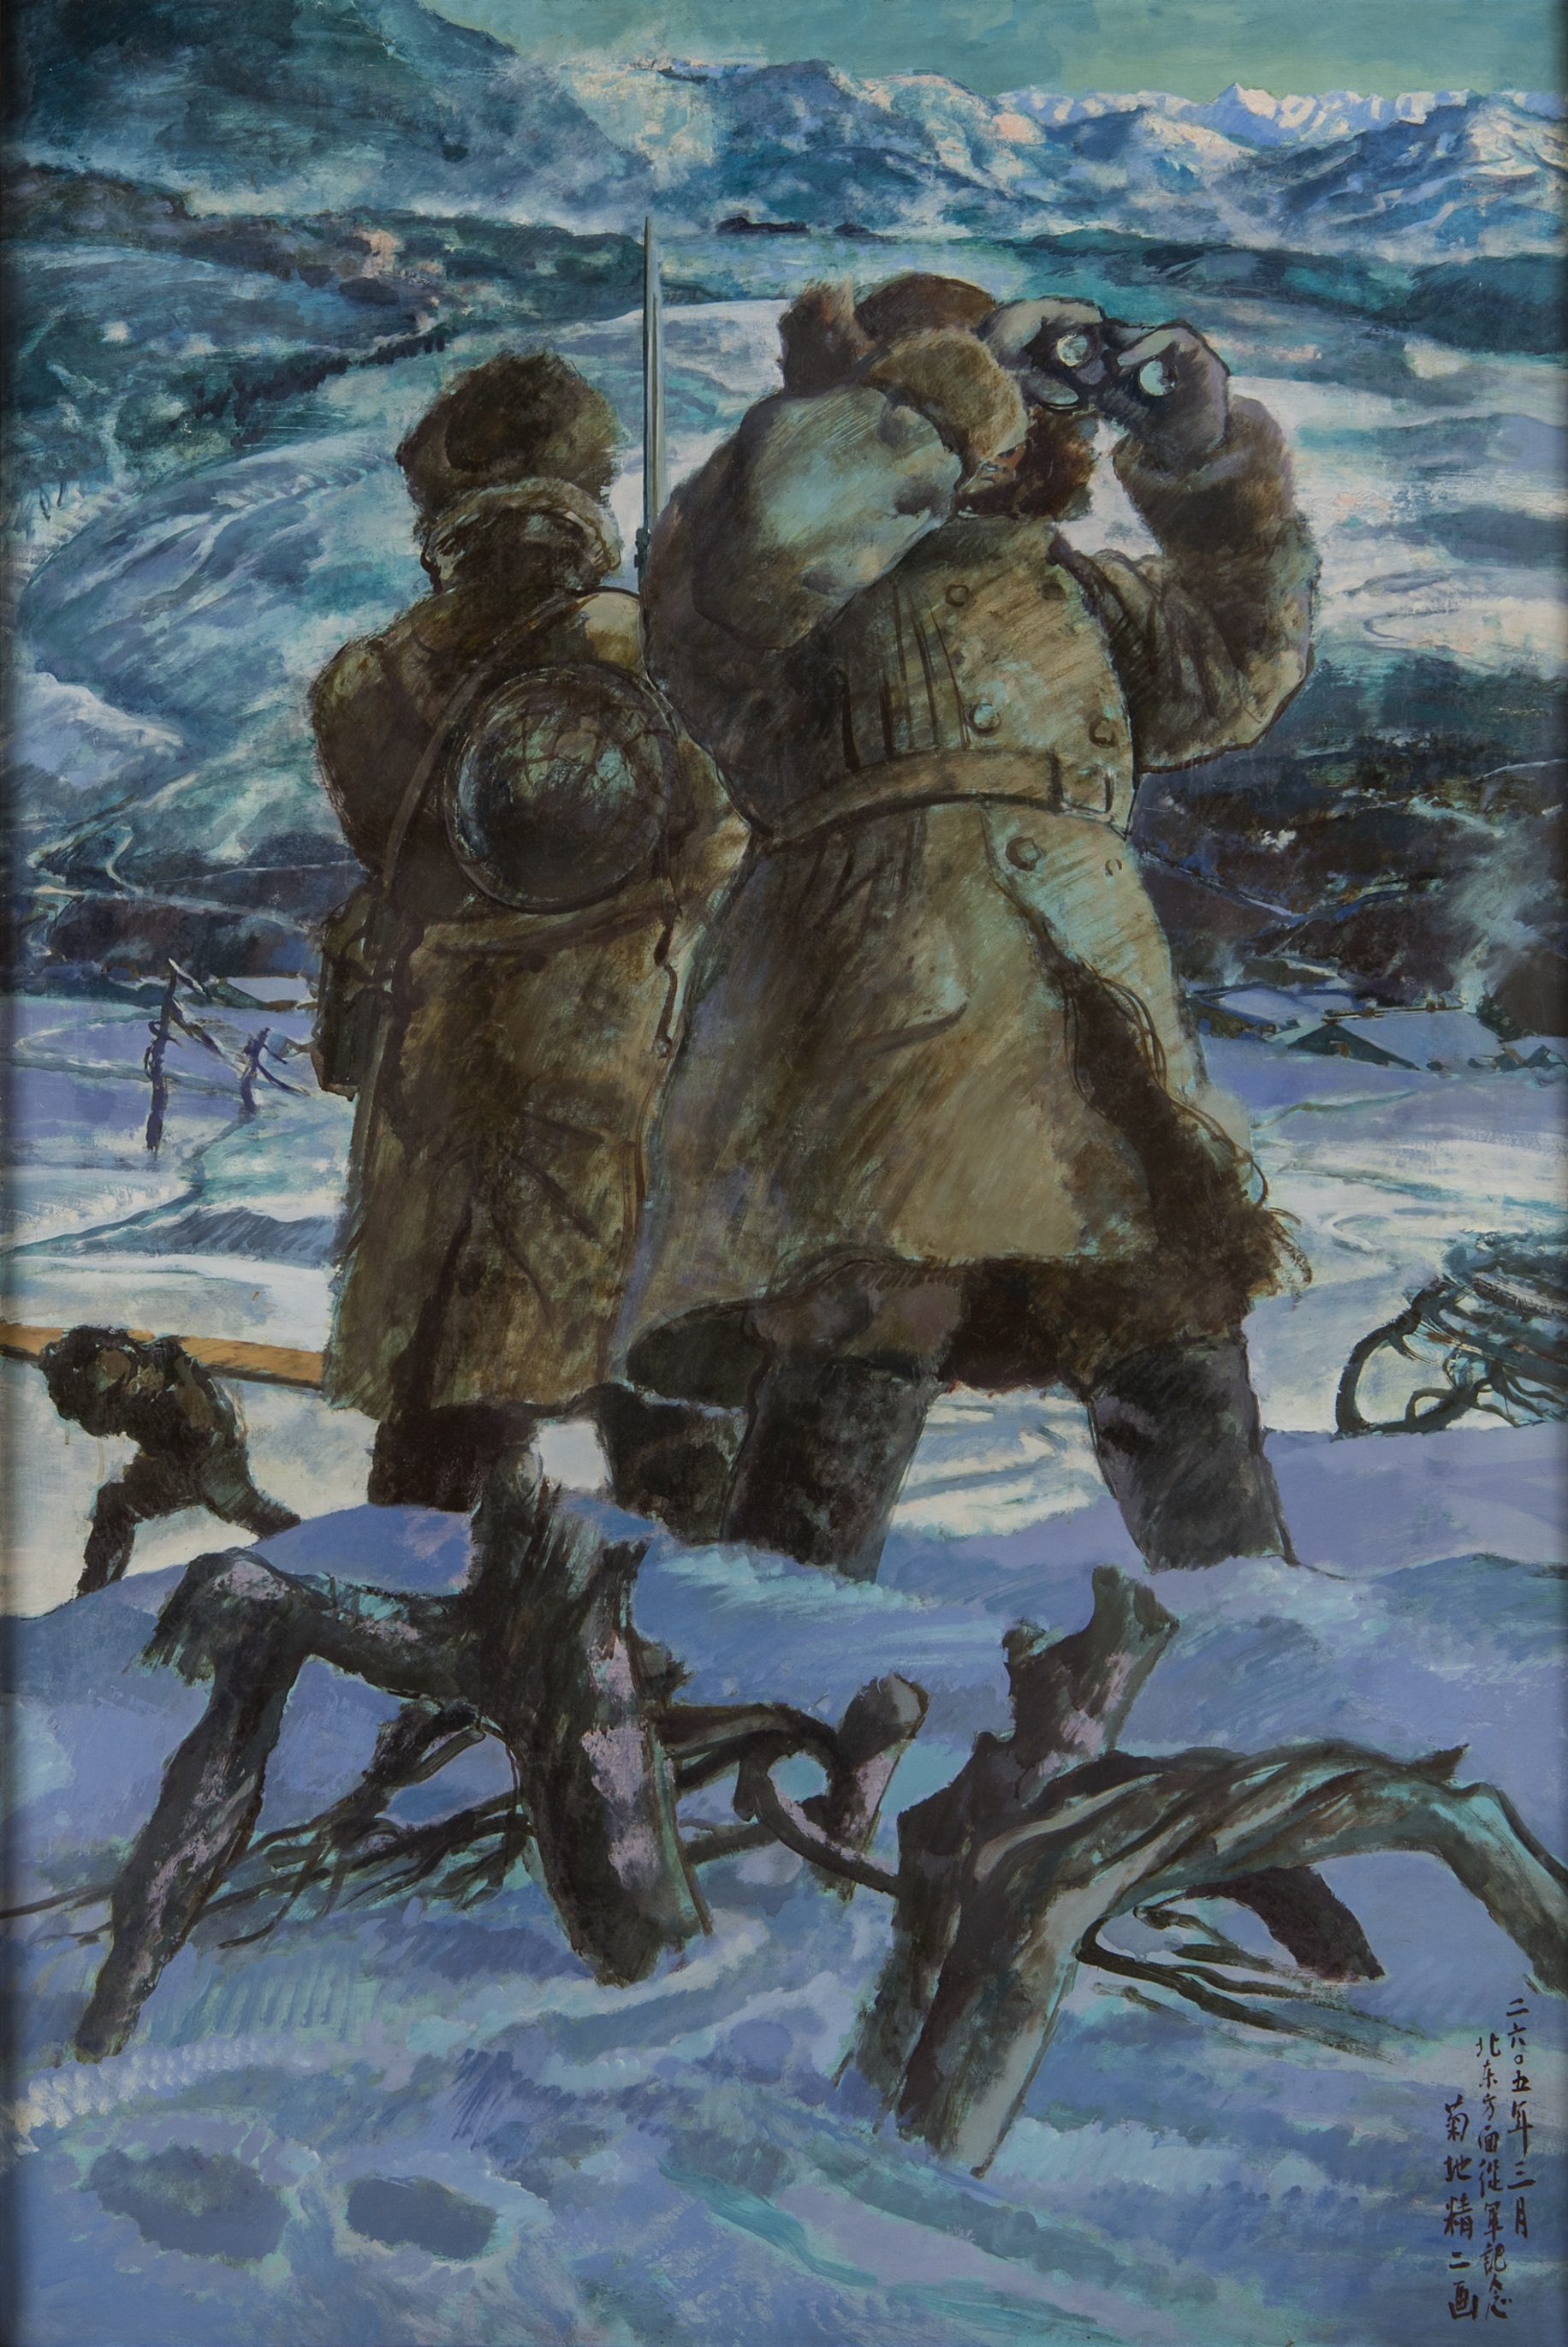 戦時下の北海道美術<br>菊地精二《北鎮》1945年